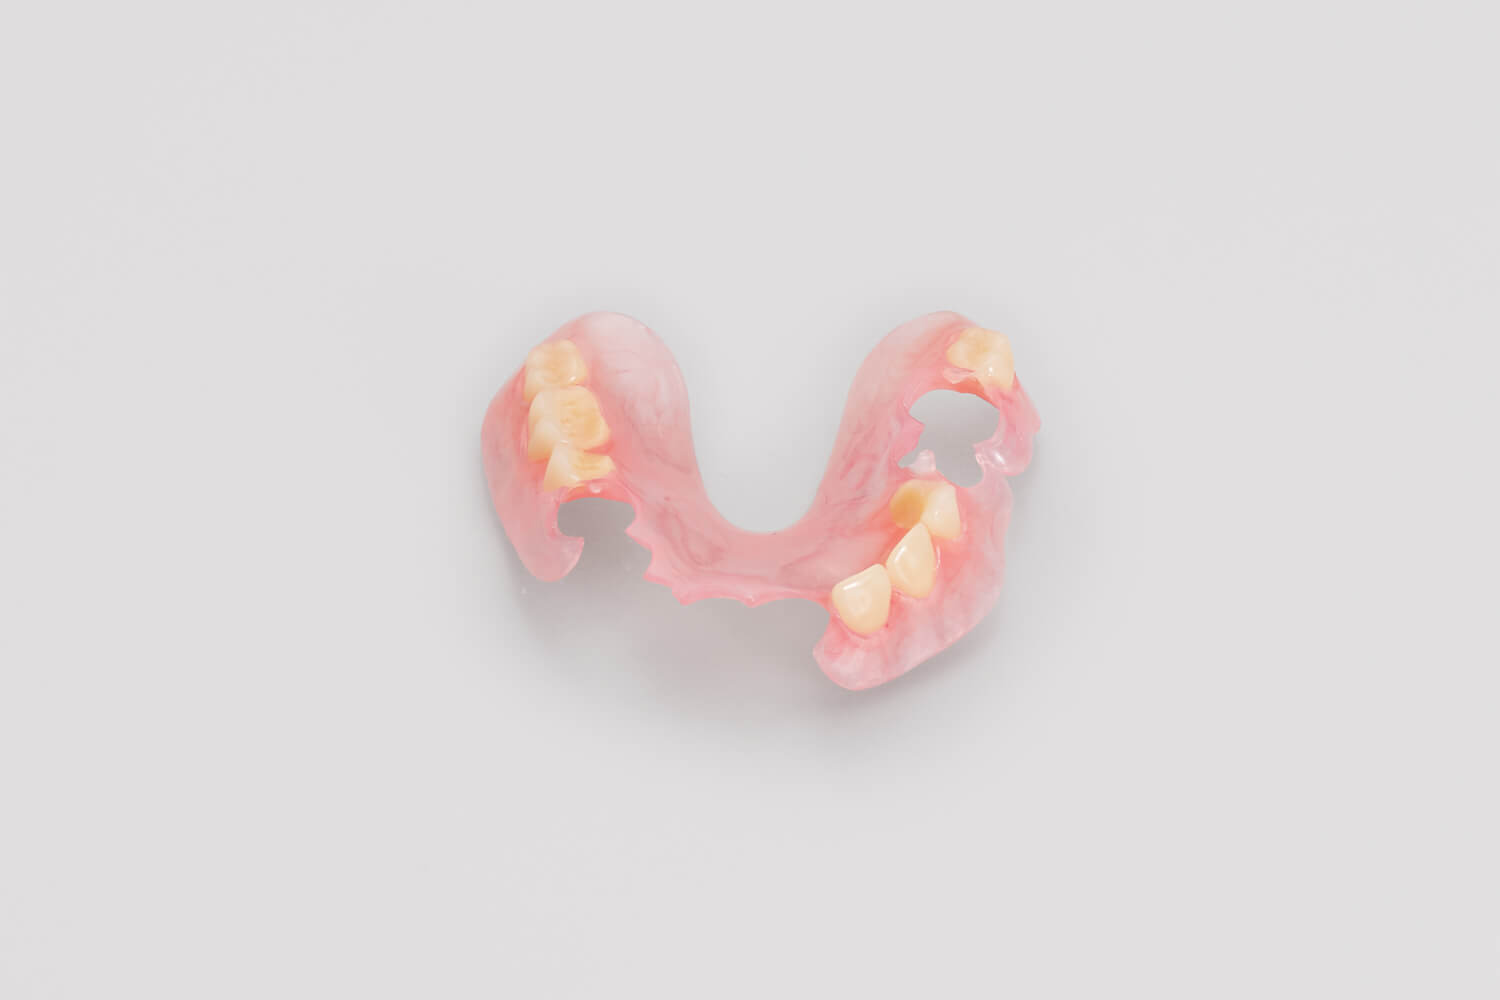 flexible partial dentures